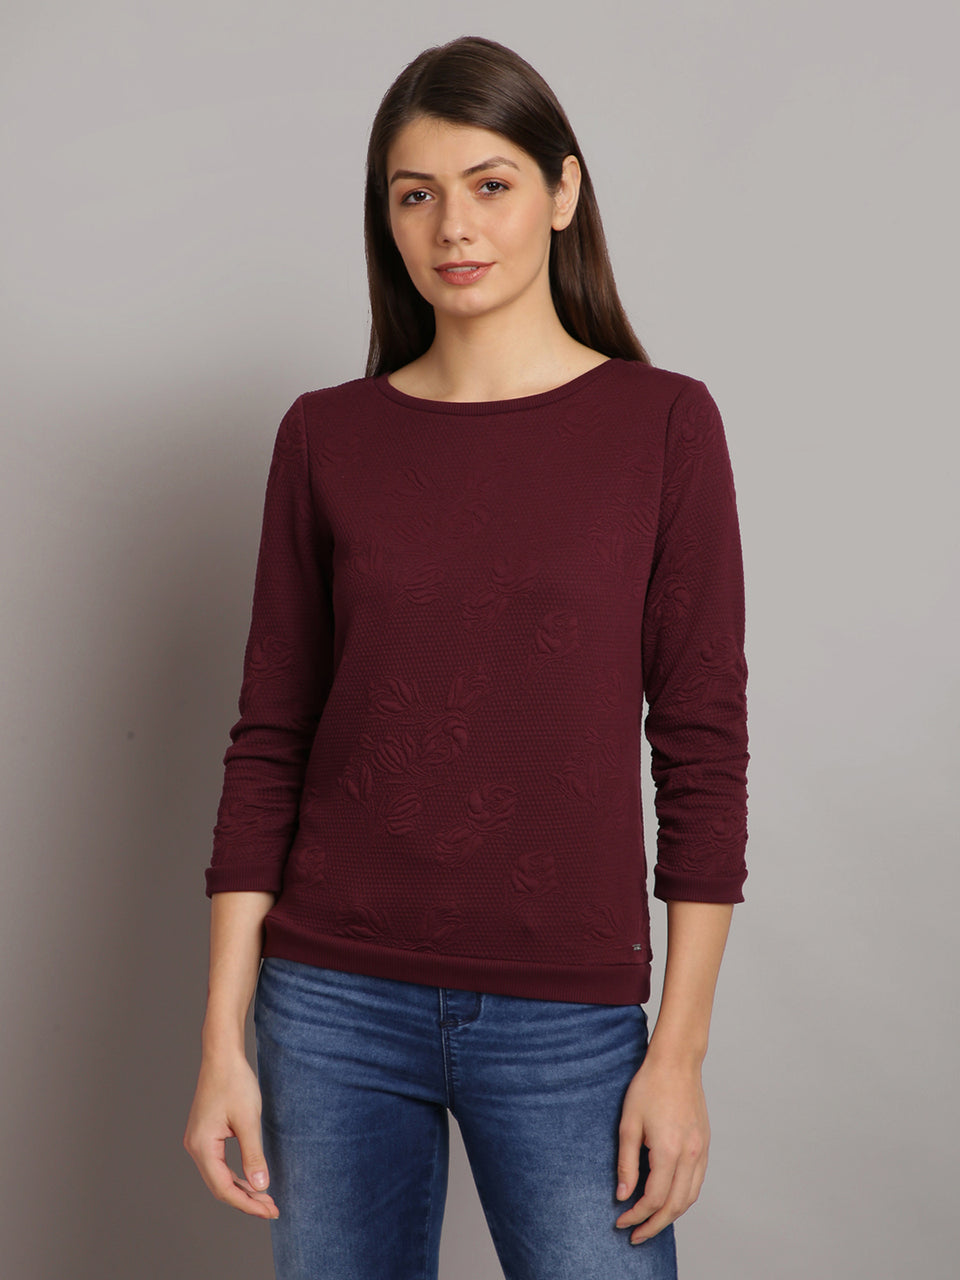 women solid maroon self design pullover sweatshirt